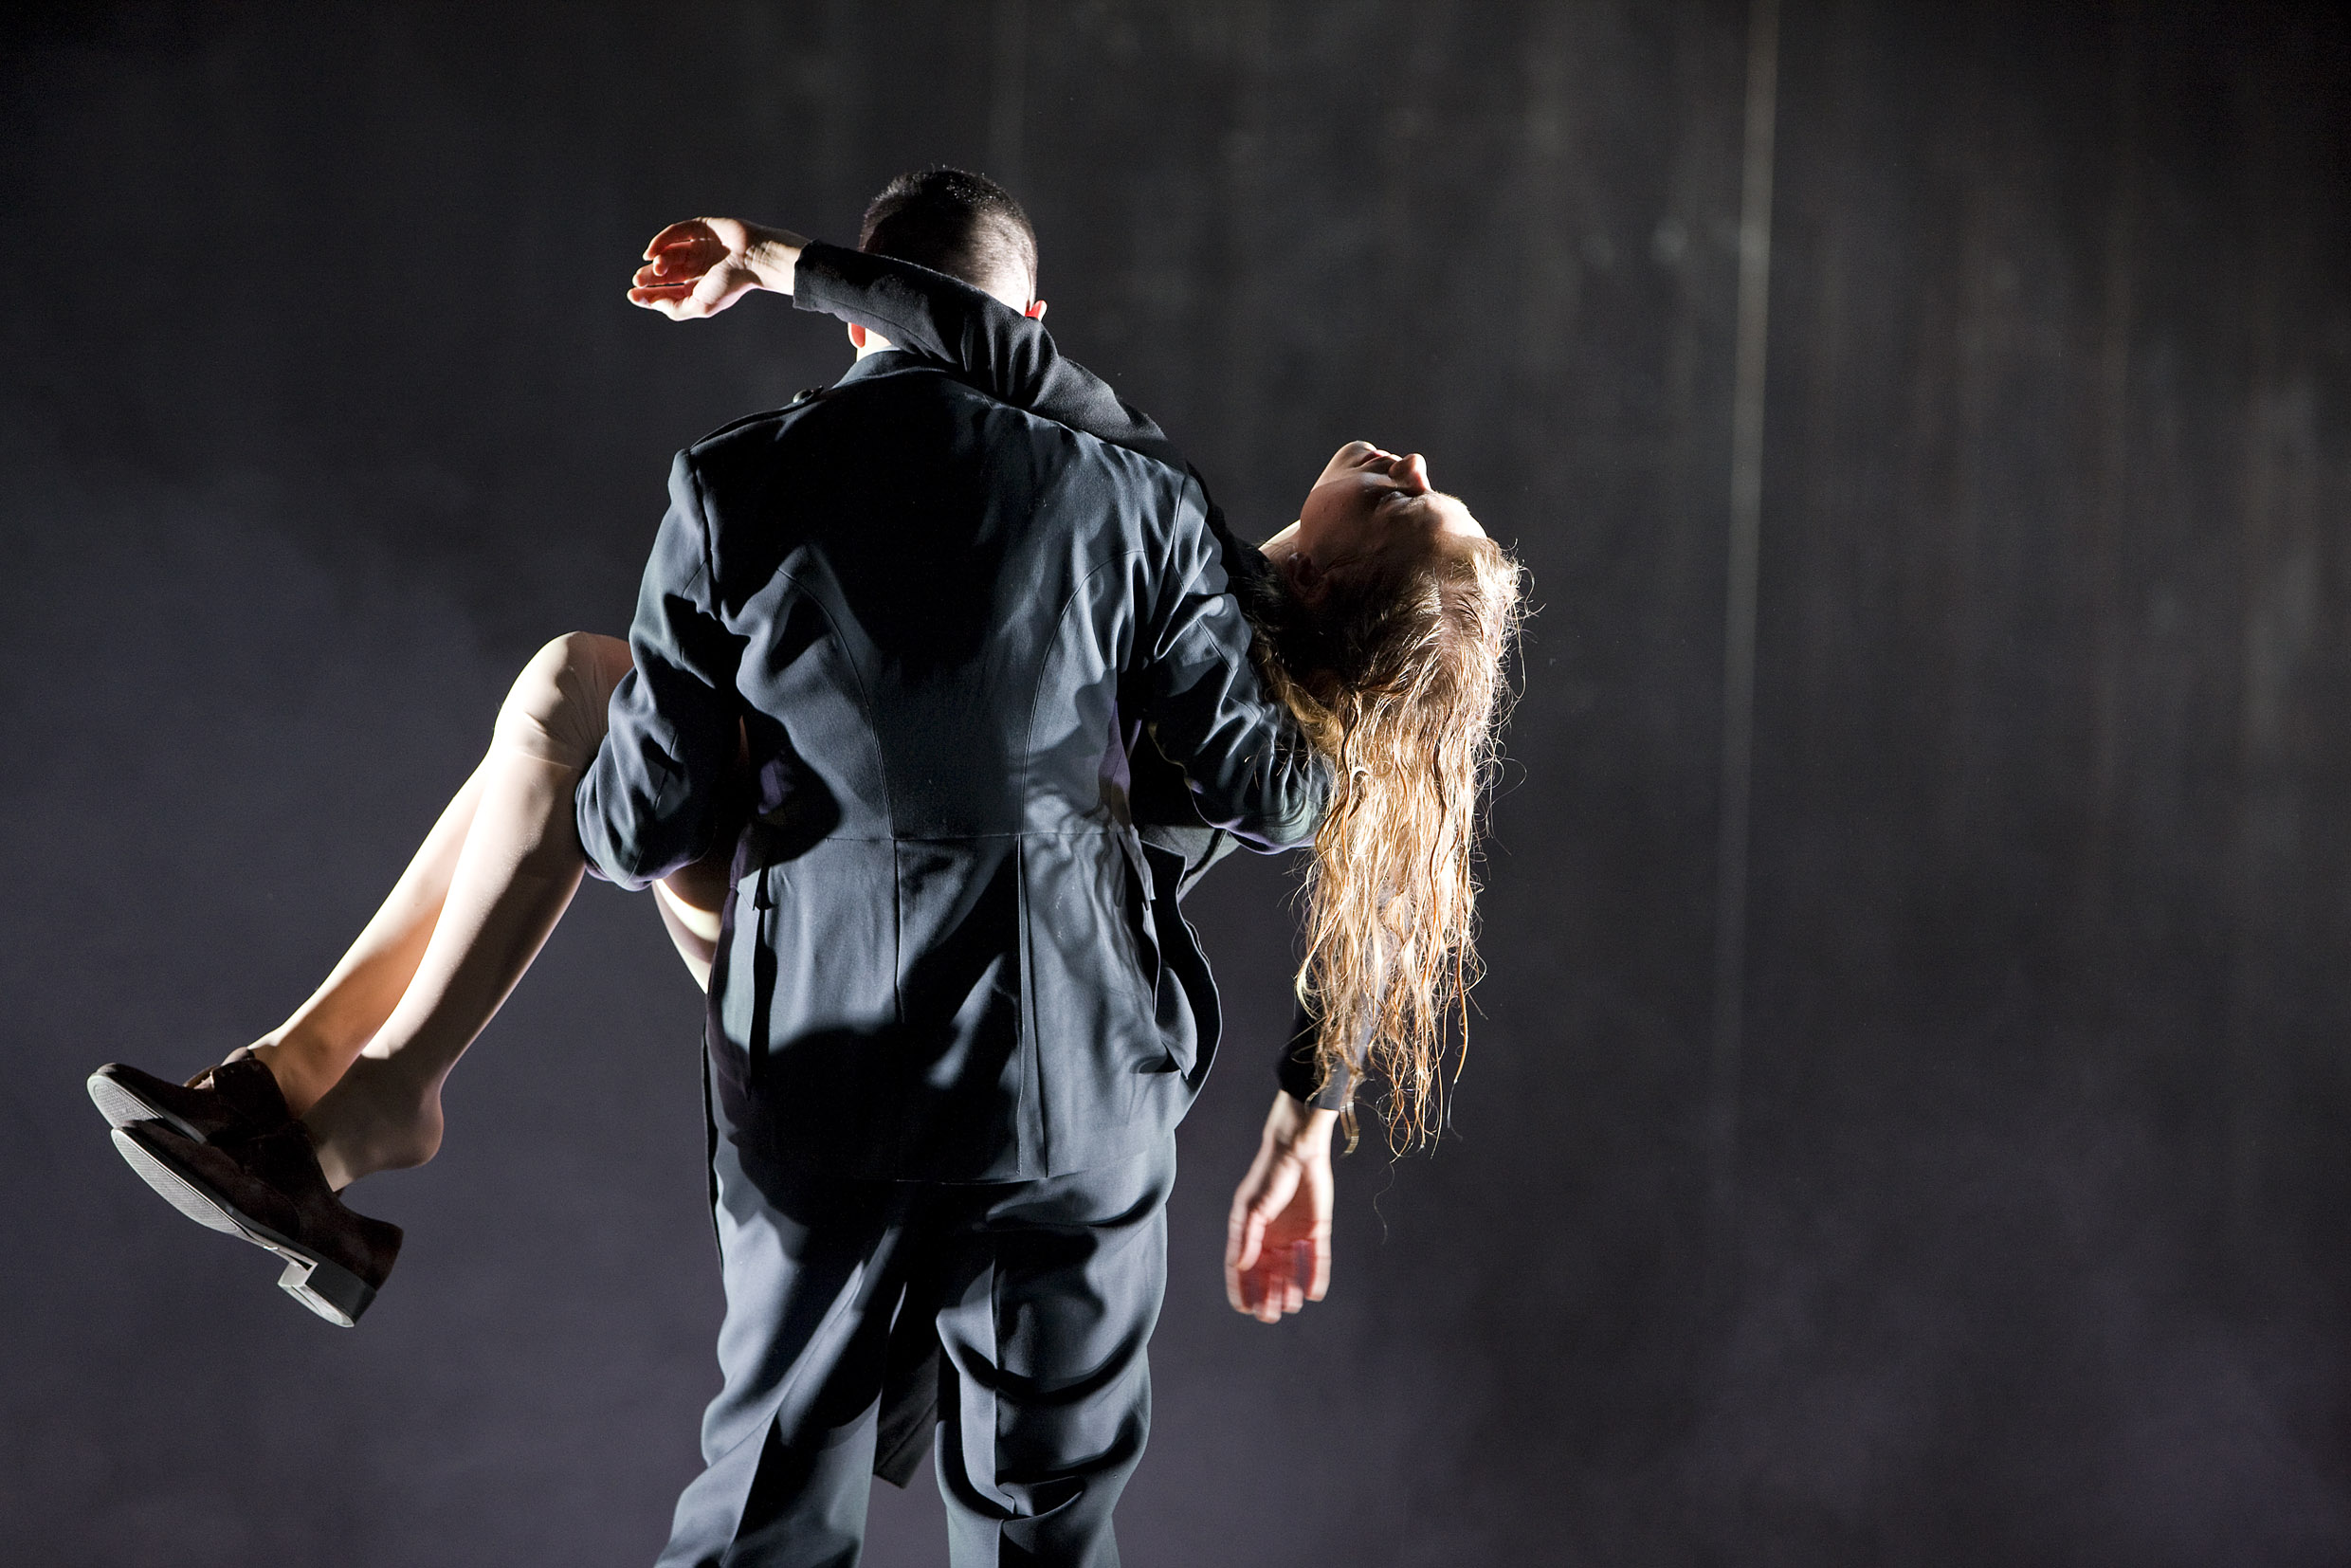 Francisco Sobrado och Lisa Werlinder i Hamlet. Premiär 31 december 2009 på Stora scenen.